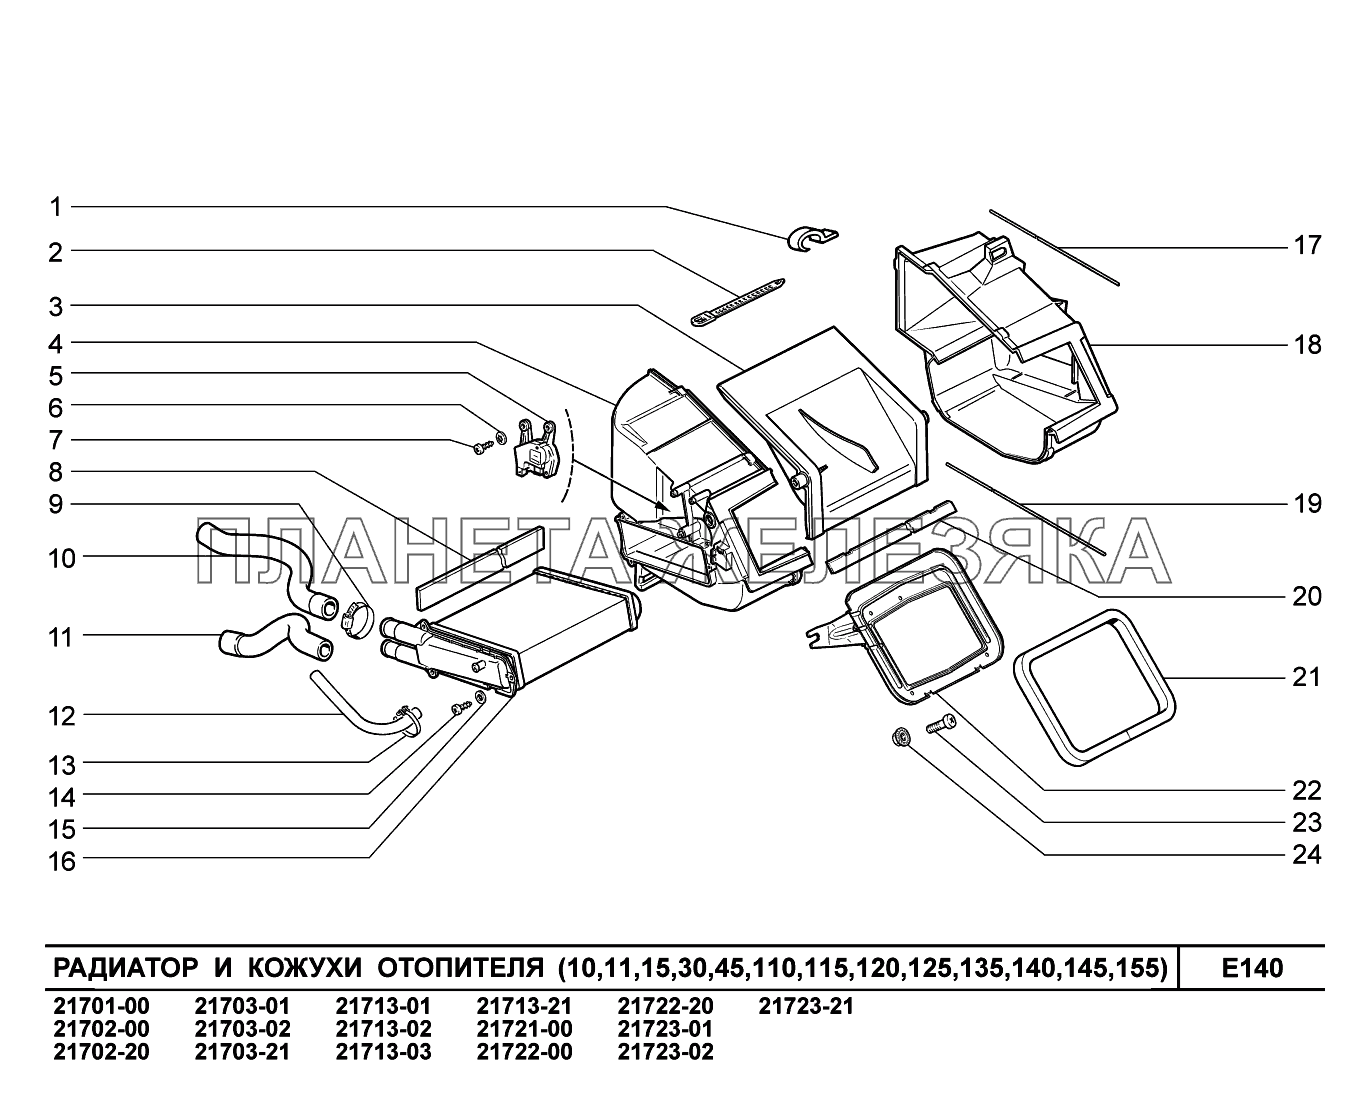 E140. Радиатор и кожухи отопителя ВАЗ-2170 